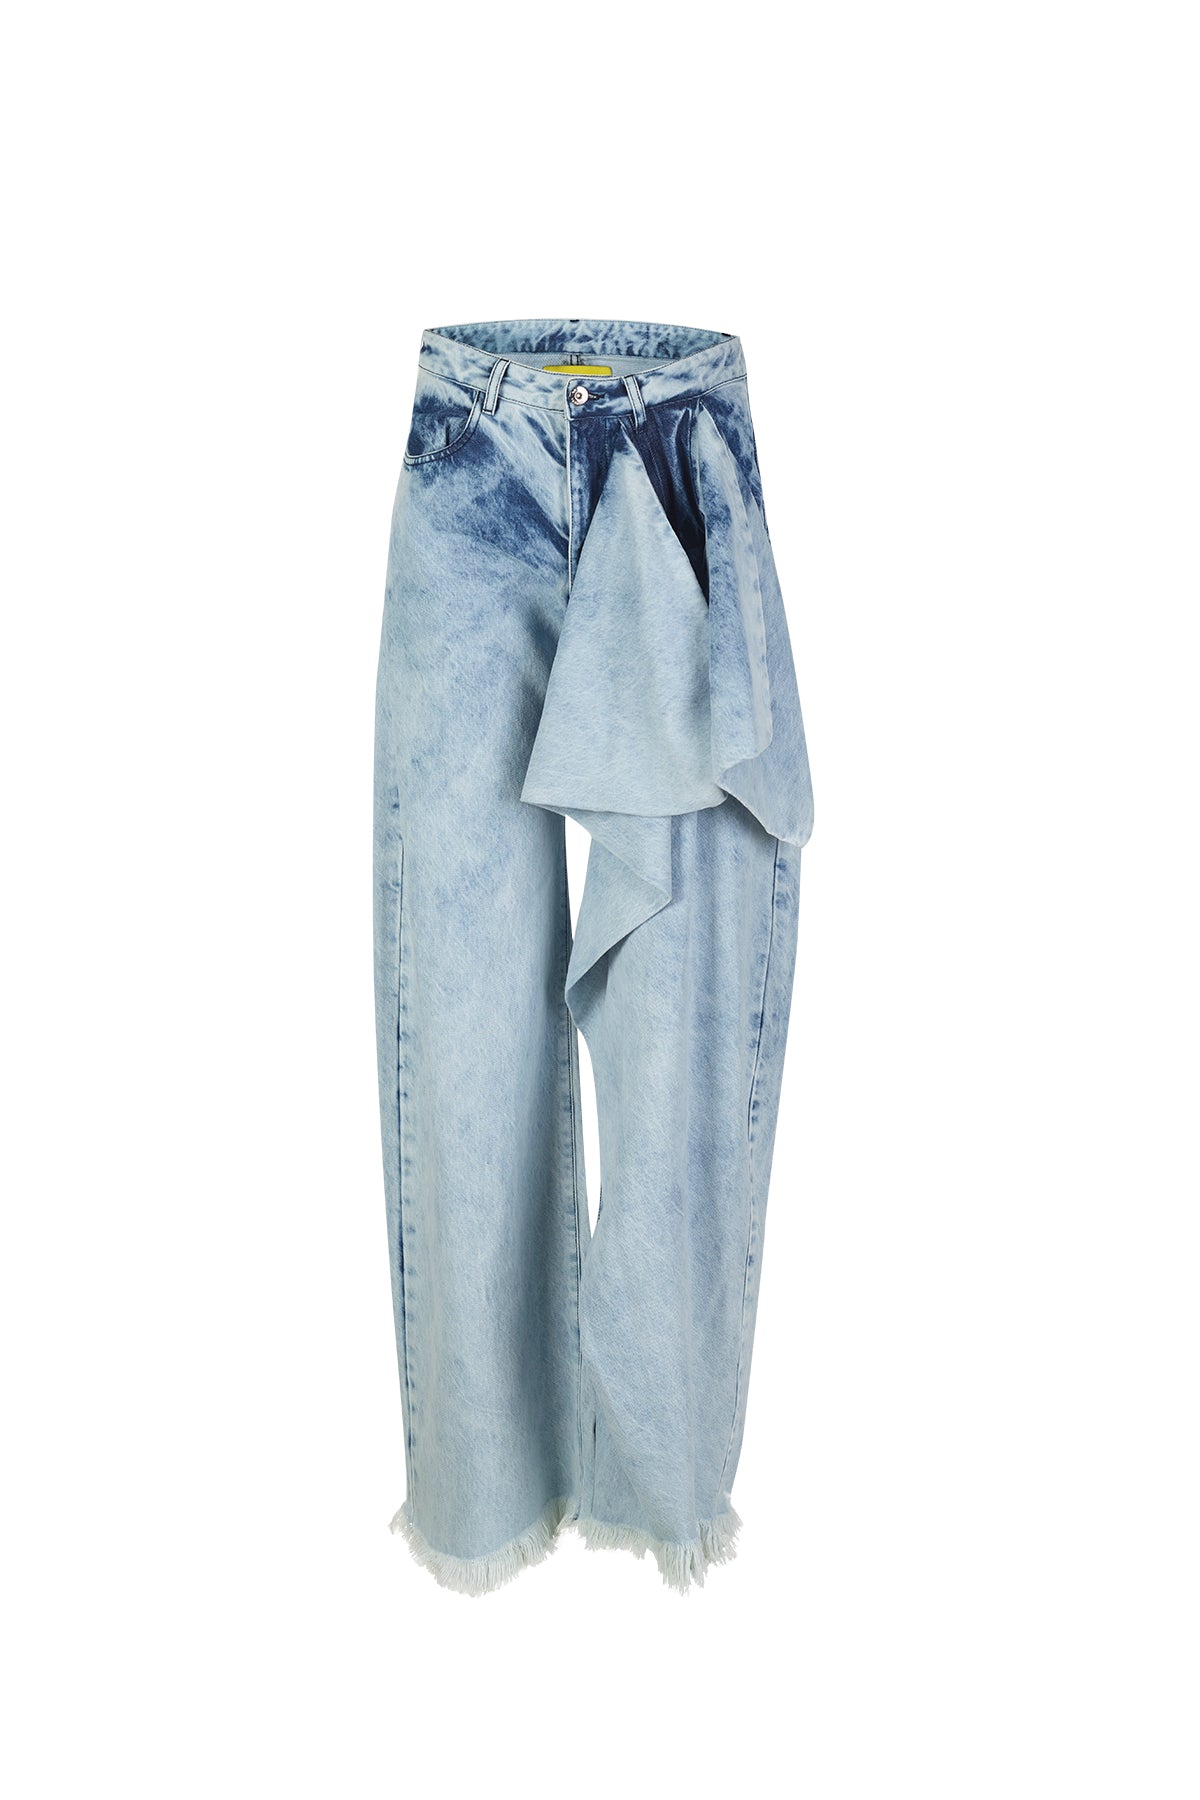 LOUIS PHILIPPE Jeans W33 L32 Acid Wash Pants Boyfriend Tie 